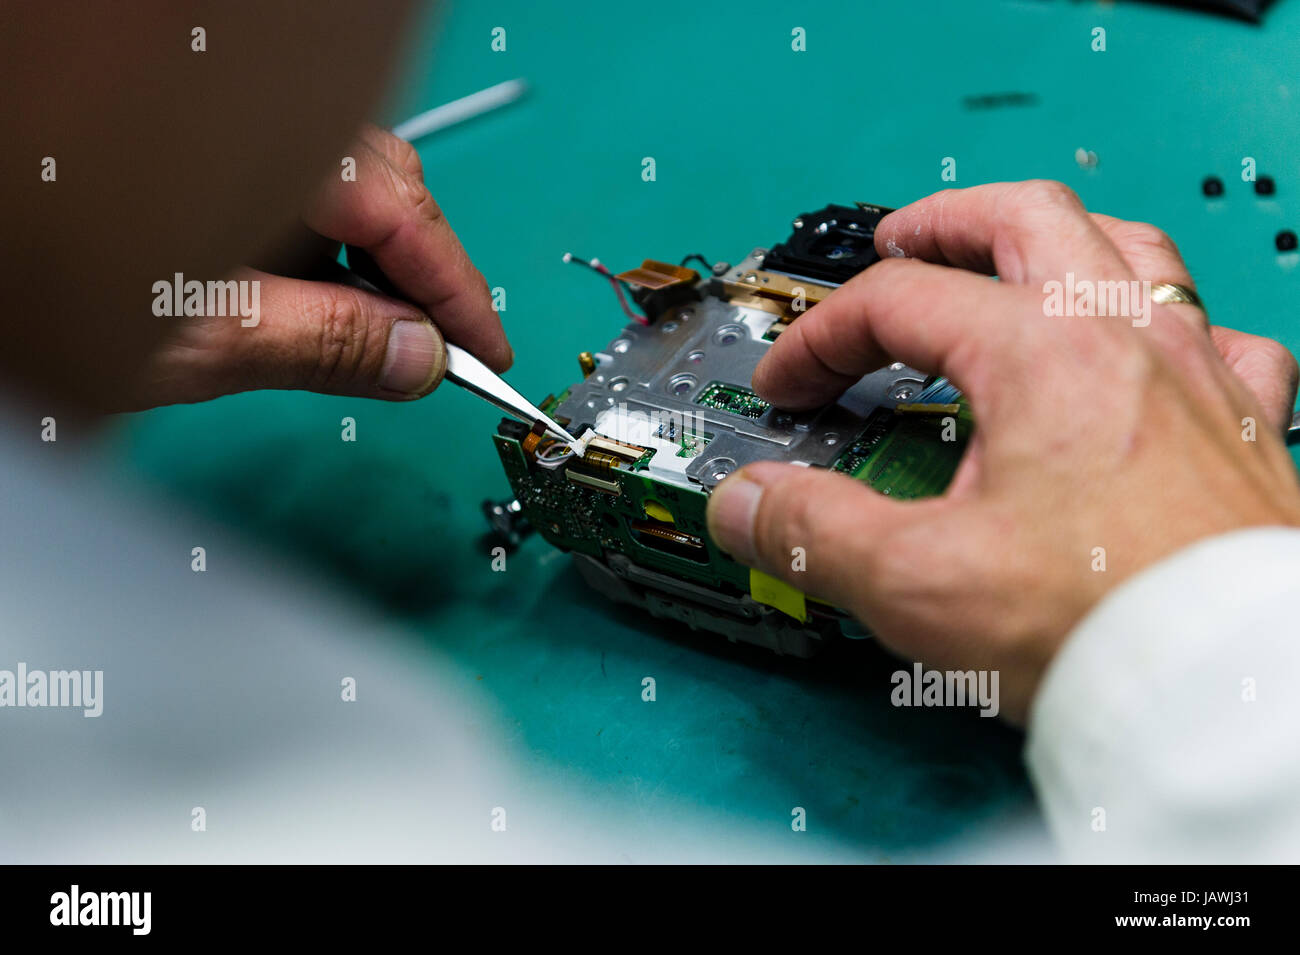 Un technicien de réparation de l'appareil photo, le capteur de circuit imprimé et de la CPU d'un appareil photo numérique. Banque D'Images